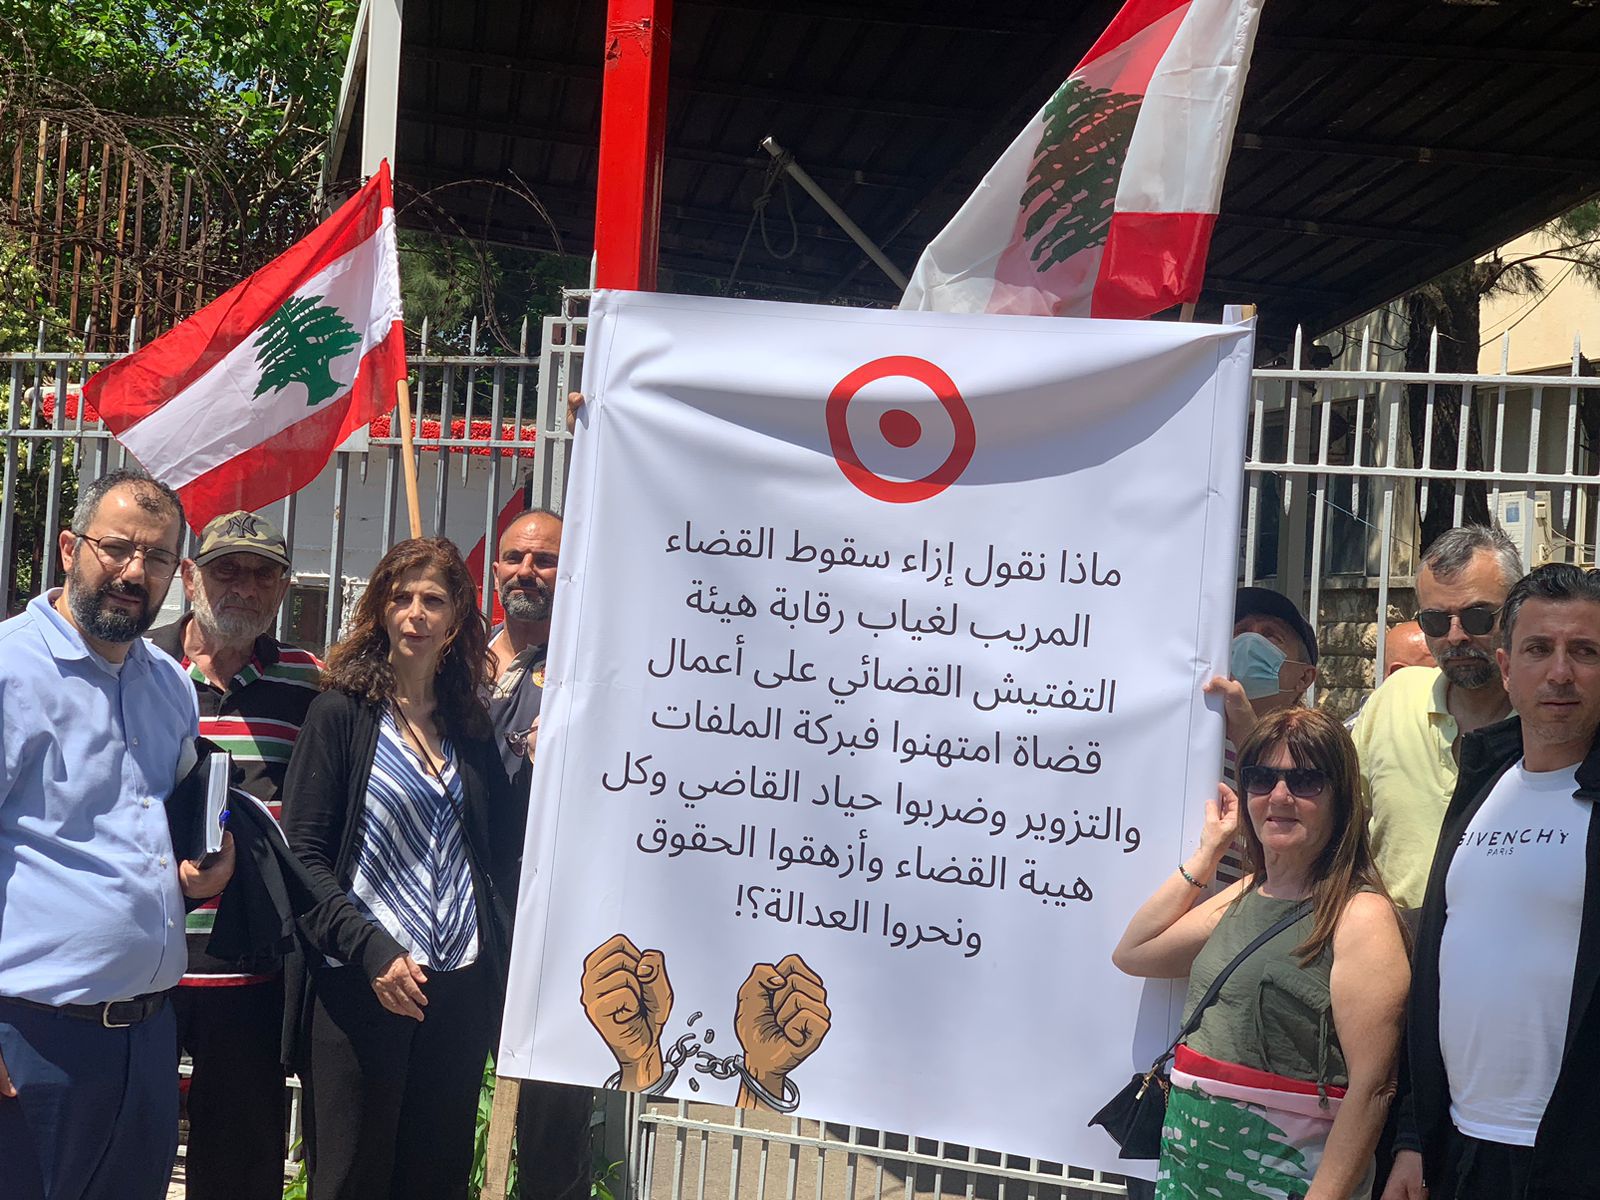 وقفة احتجاجية لمودعين ومحامين أمام قصر عدل بيروت للمطالبة بإصلاح القضاء ومعاقبة قضاة الفساد